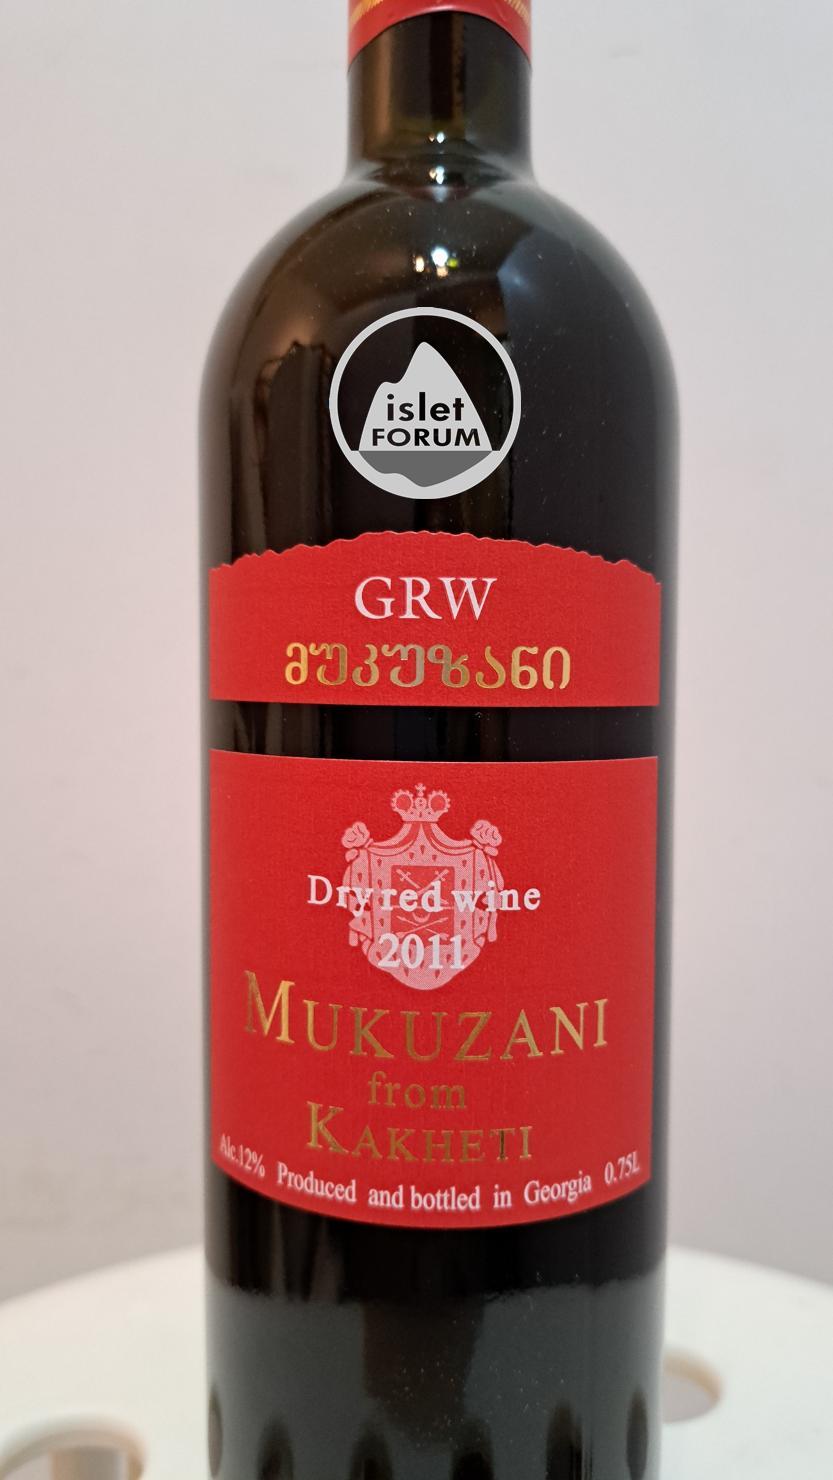 GRW winery Mukuzani Dry red wine 2011 from Kakheti - Georgian wine (2).jpg